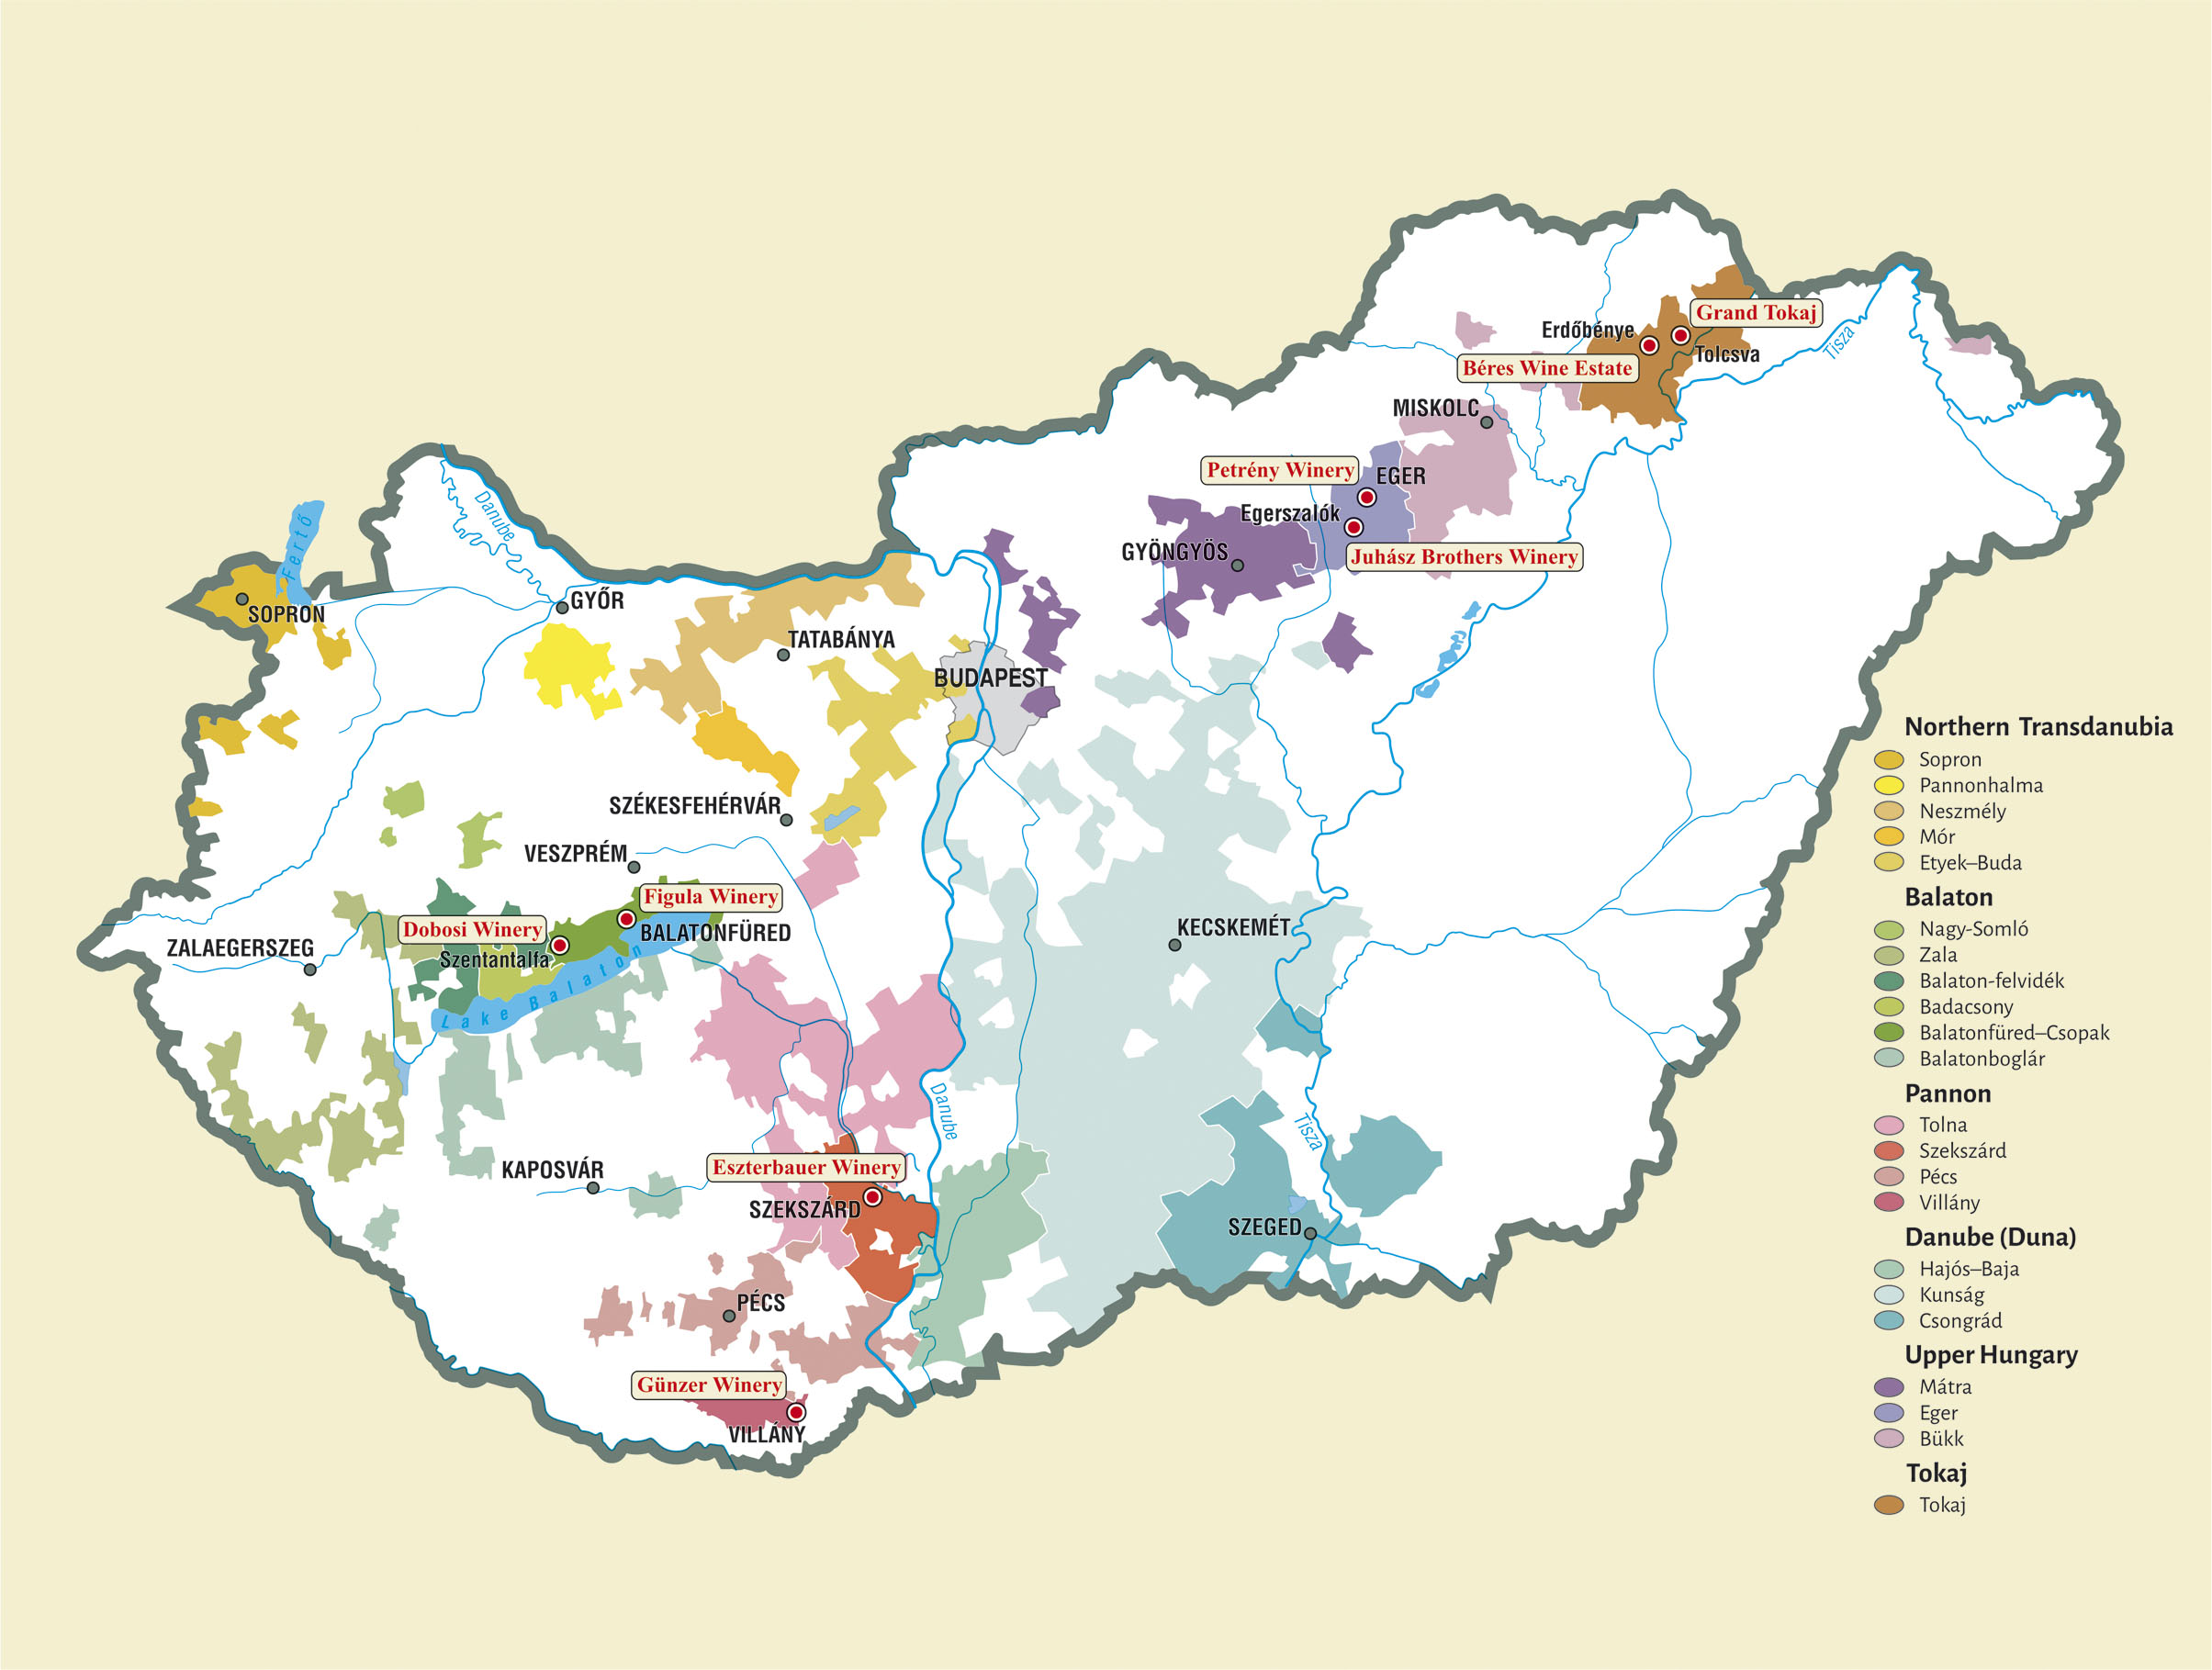 Hungary's wine regions and winning wineries - 2018